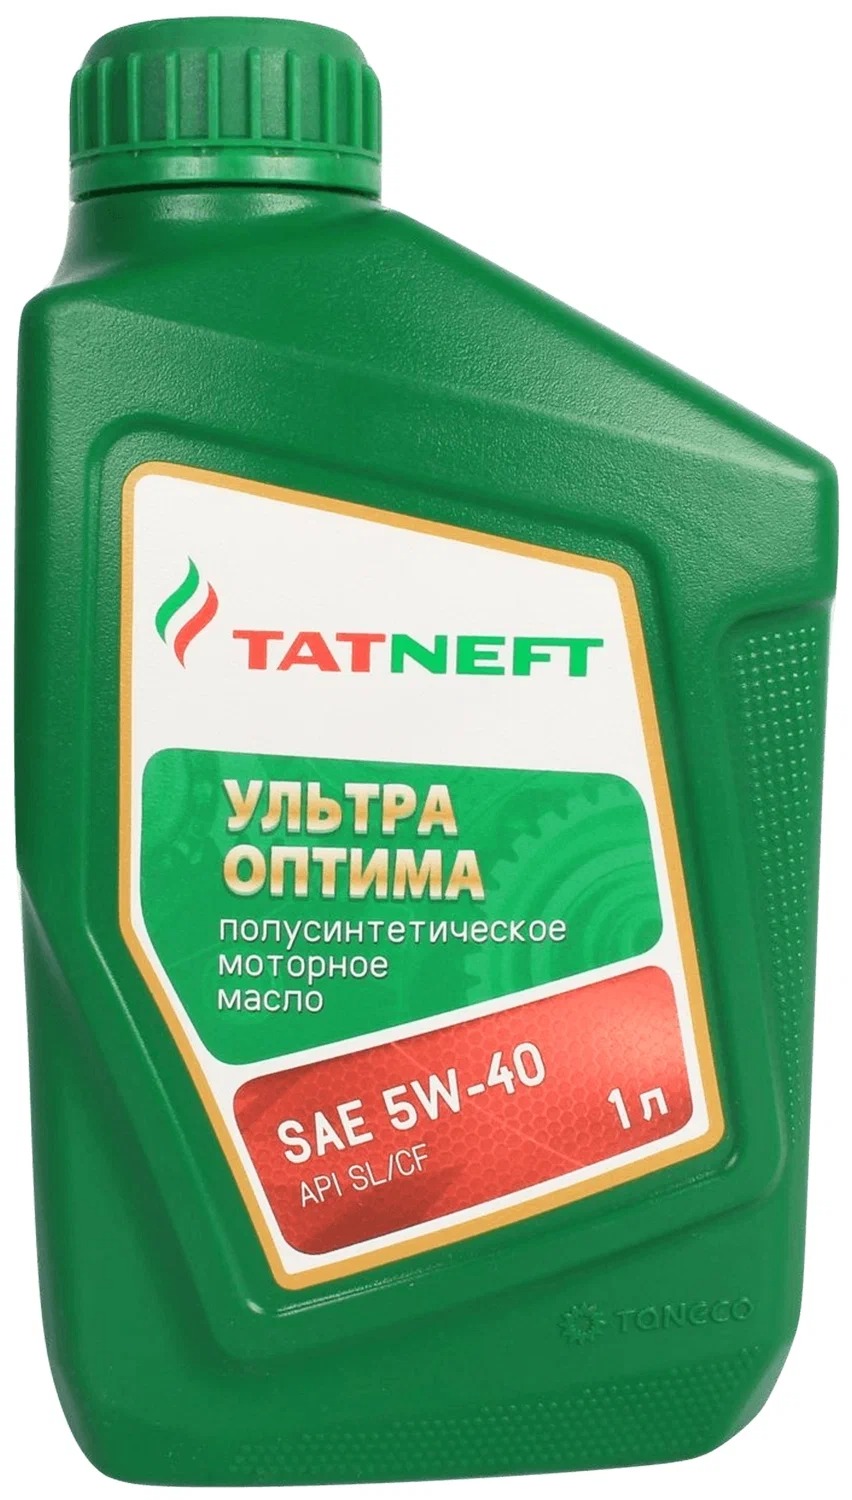 Моторное масло TATNEFT полусинтетическое ультра-Оптима SAE 5W40 API SL/CF 1л